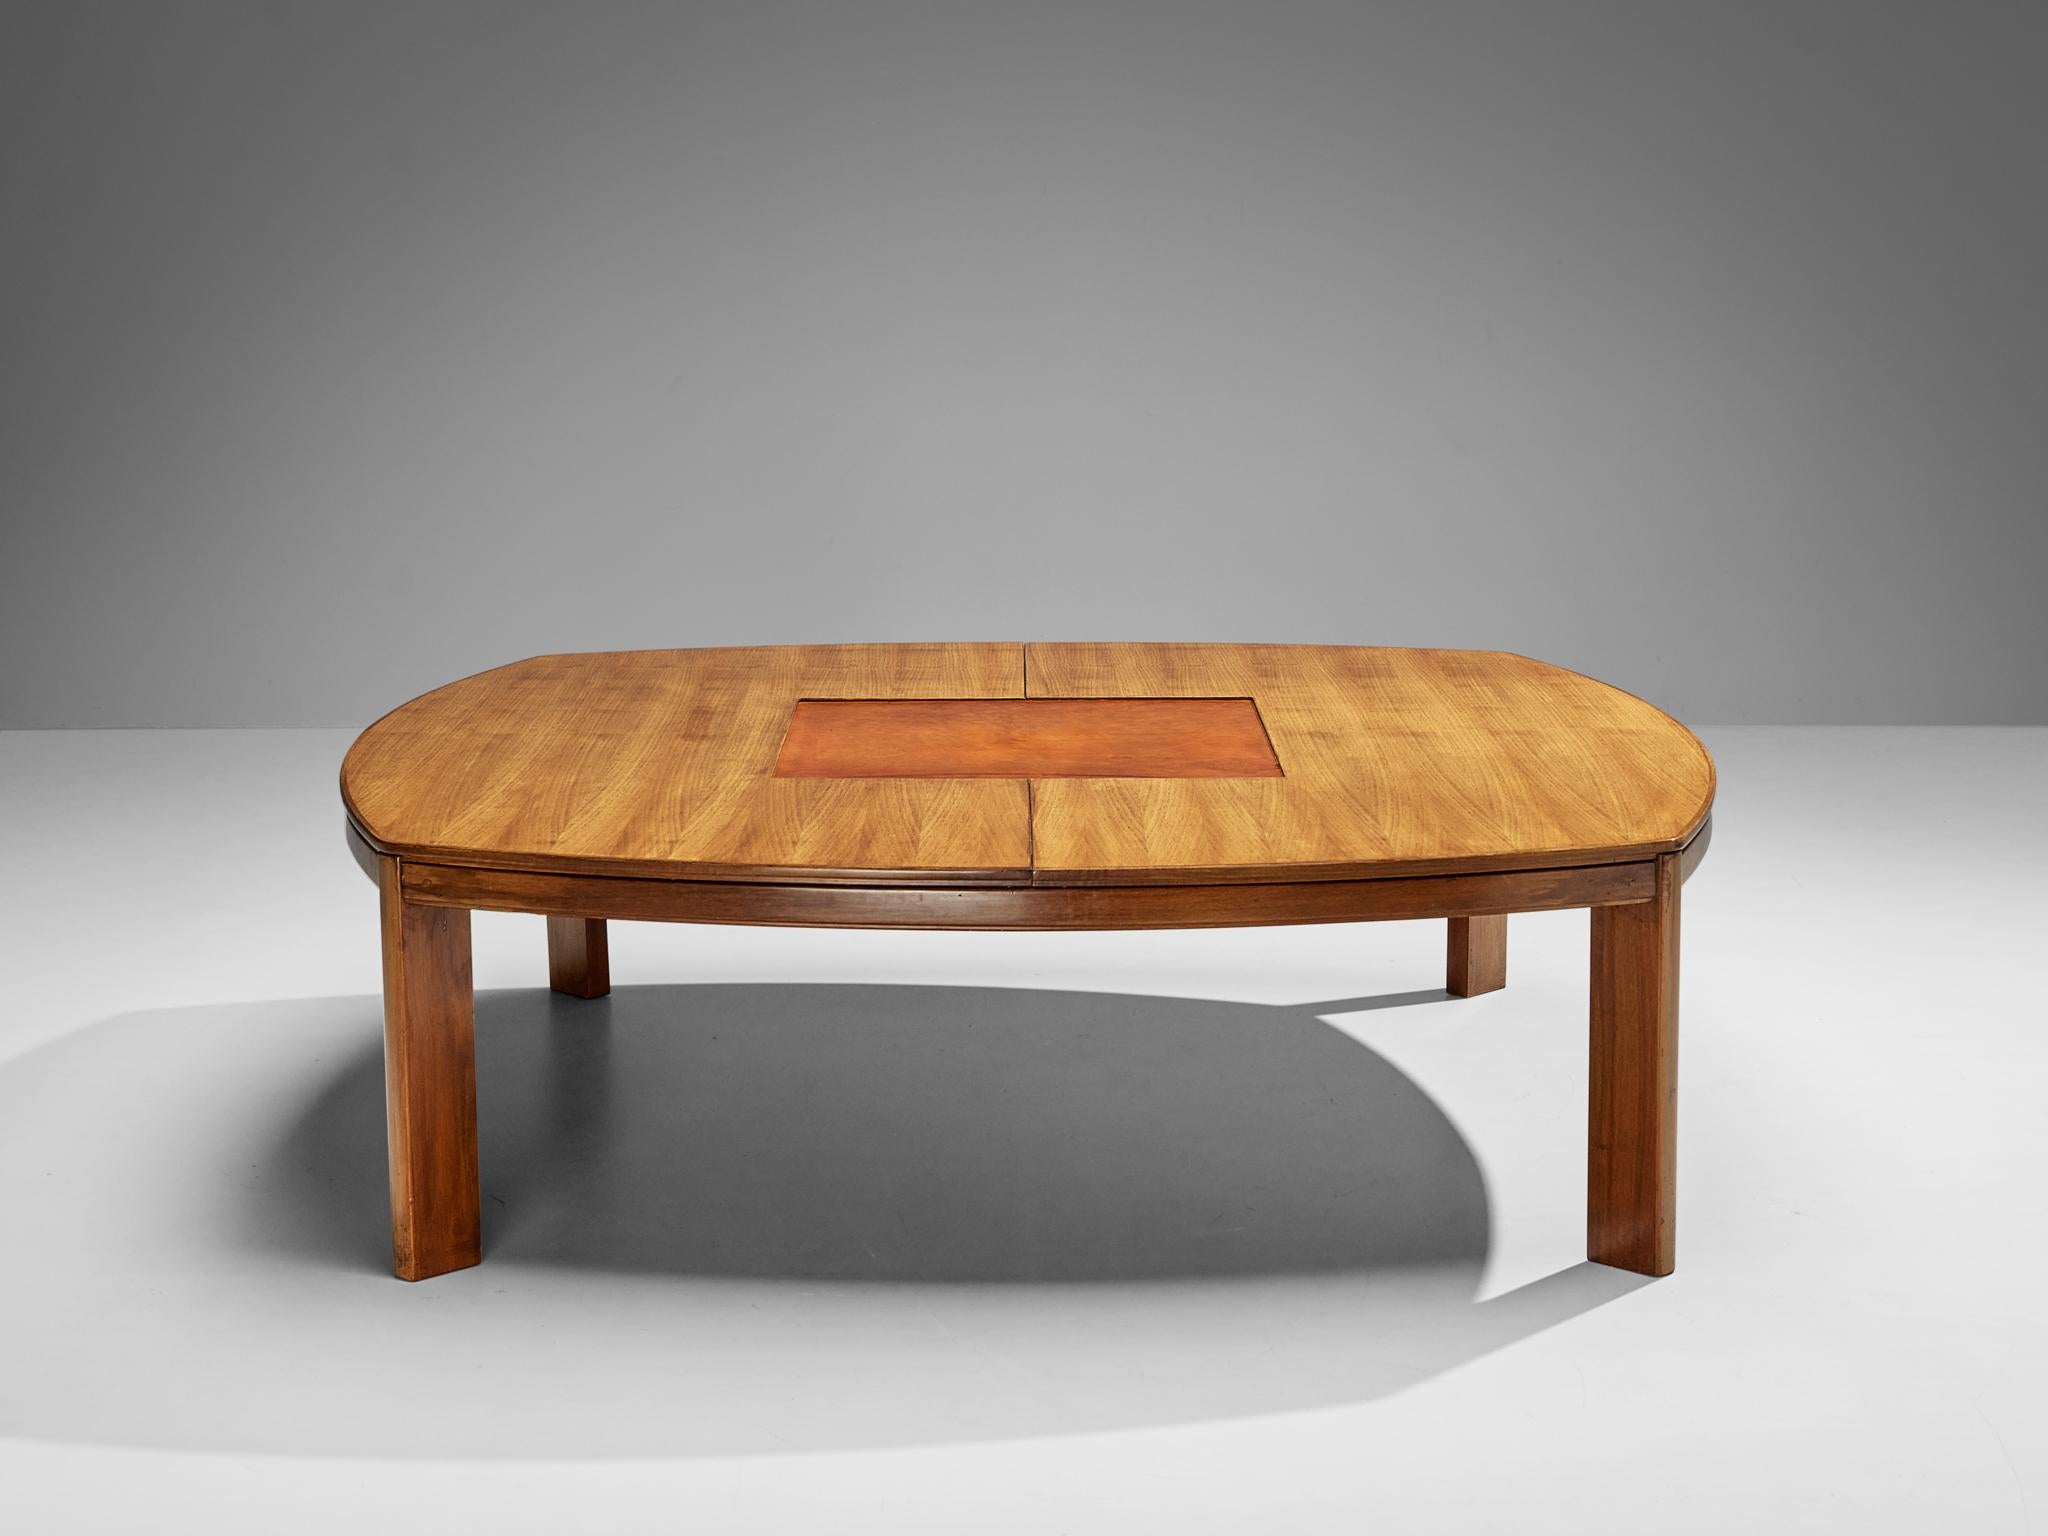 Table de salle à manger ou de conférence, noyer, cuir cognac, Italie, années 1960

La polyvalence de ce meuble est due à sa taille substantielle, ce qui en fait une option optimale pour diverses fonctions, notamment pour servir de table de